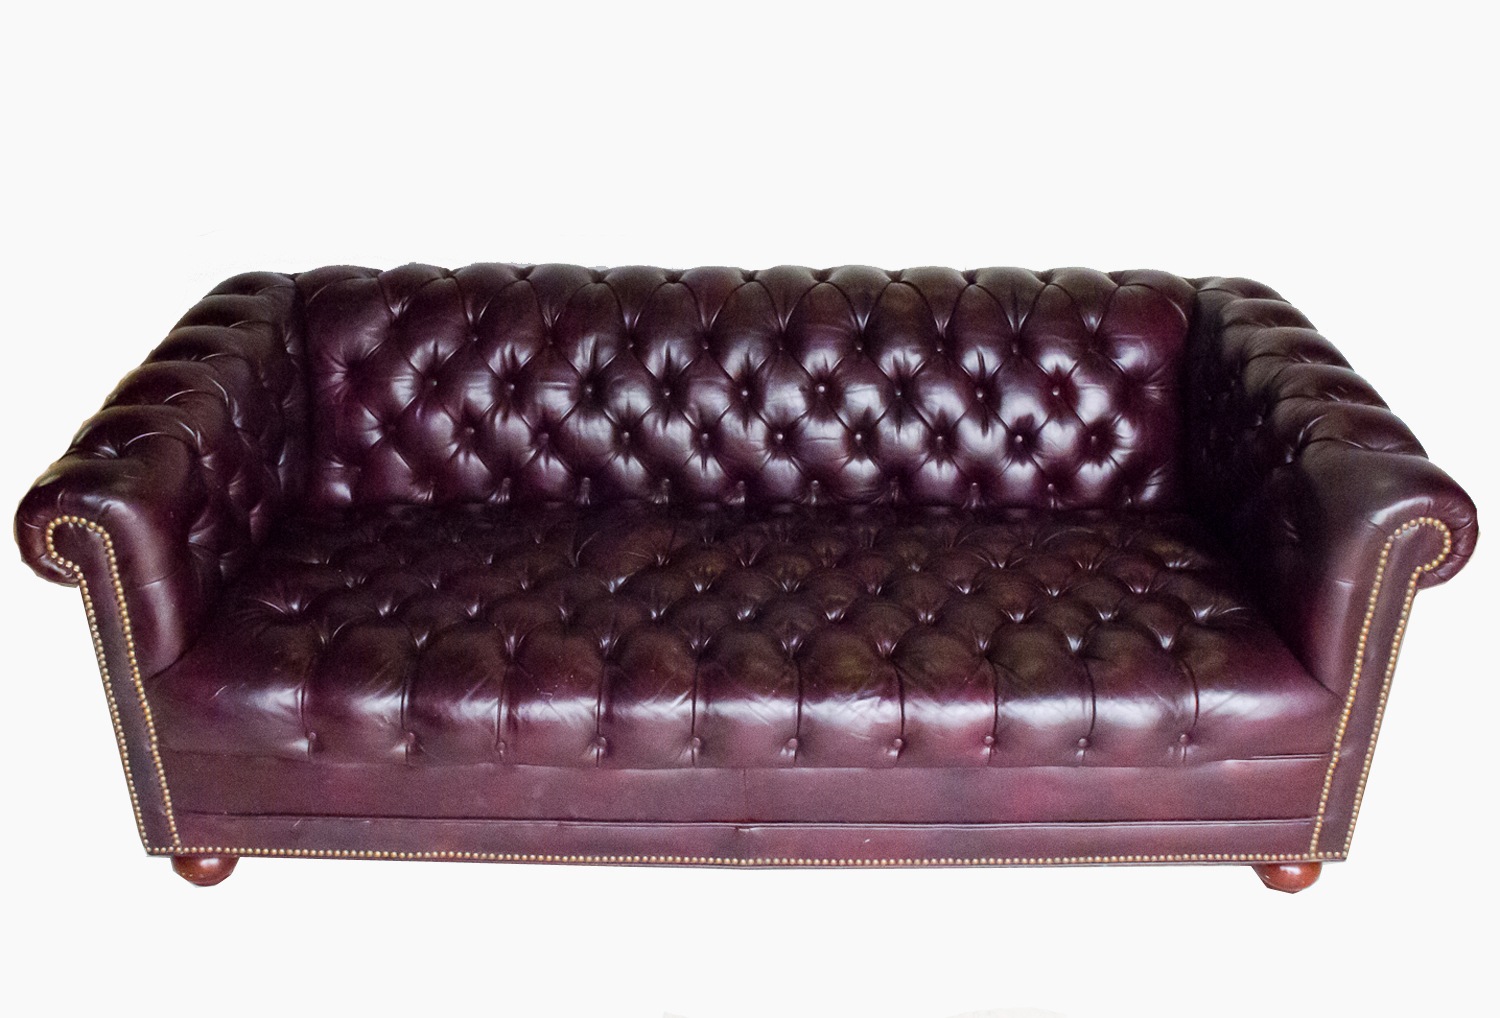 leather-tufted-sofa-new-leather-sofa-tufted